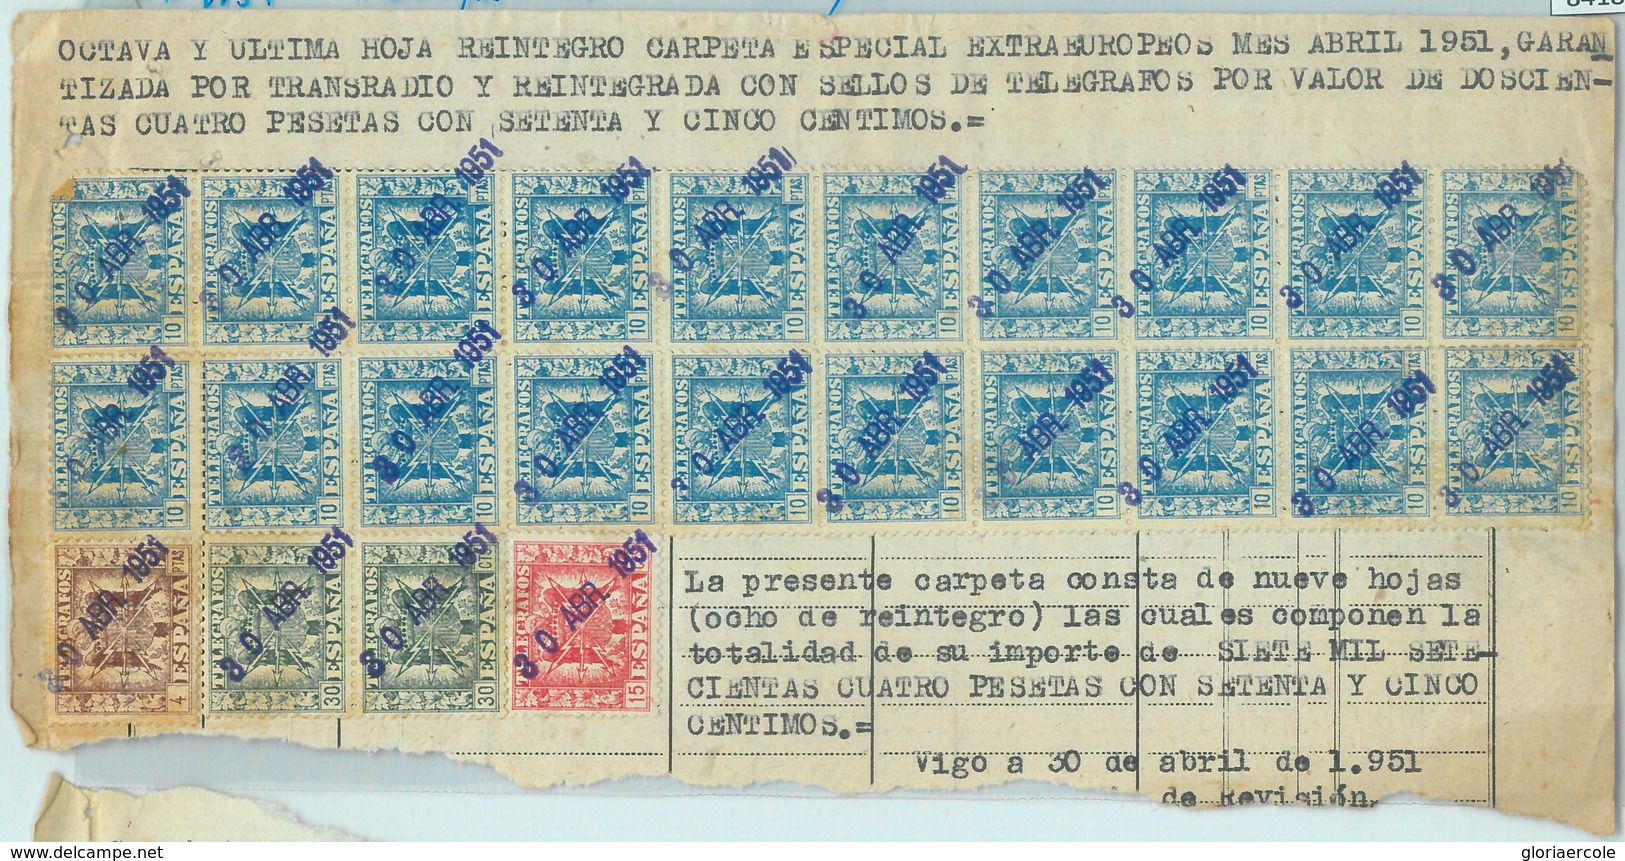 30-April-1951 payment - front